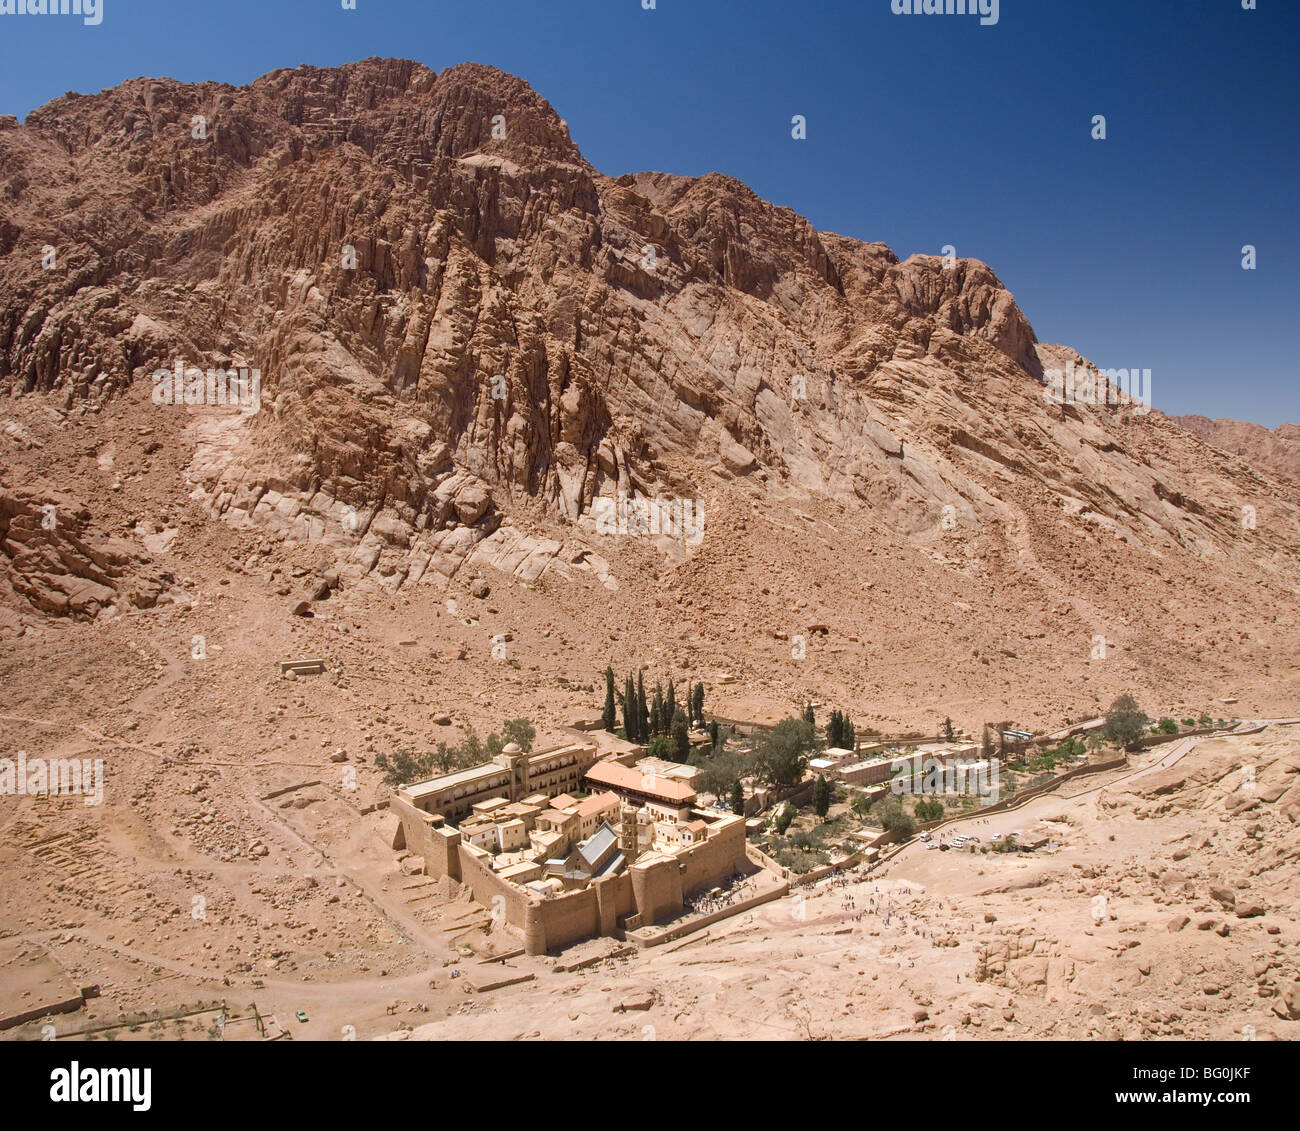 Le Monastère de Sainte Catherine, à l'épaulement de la montagne de Sinaï derrière, péninsule du Sinaï Désert, Egypte, Afrique du Nord Banque D'Images